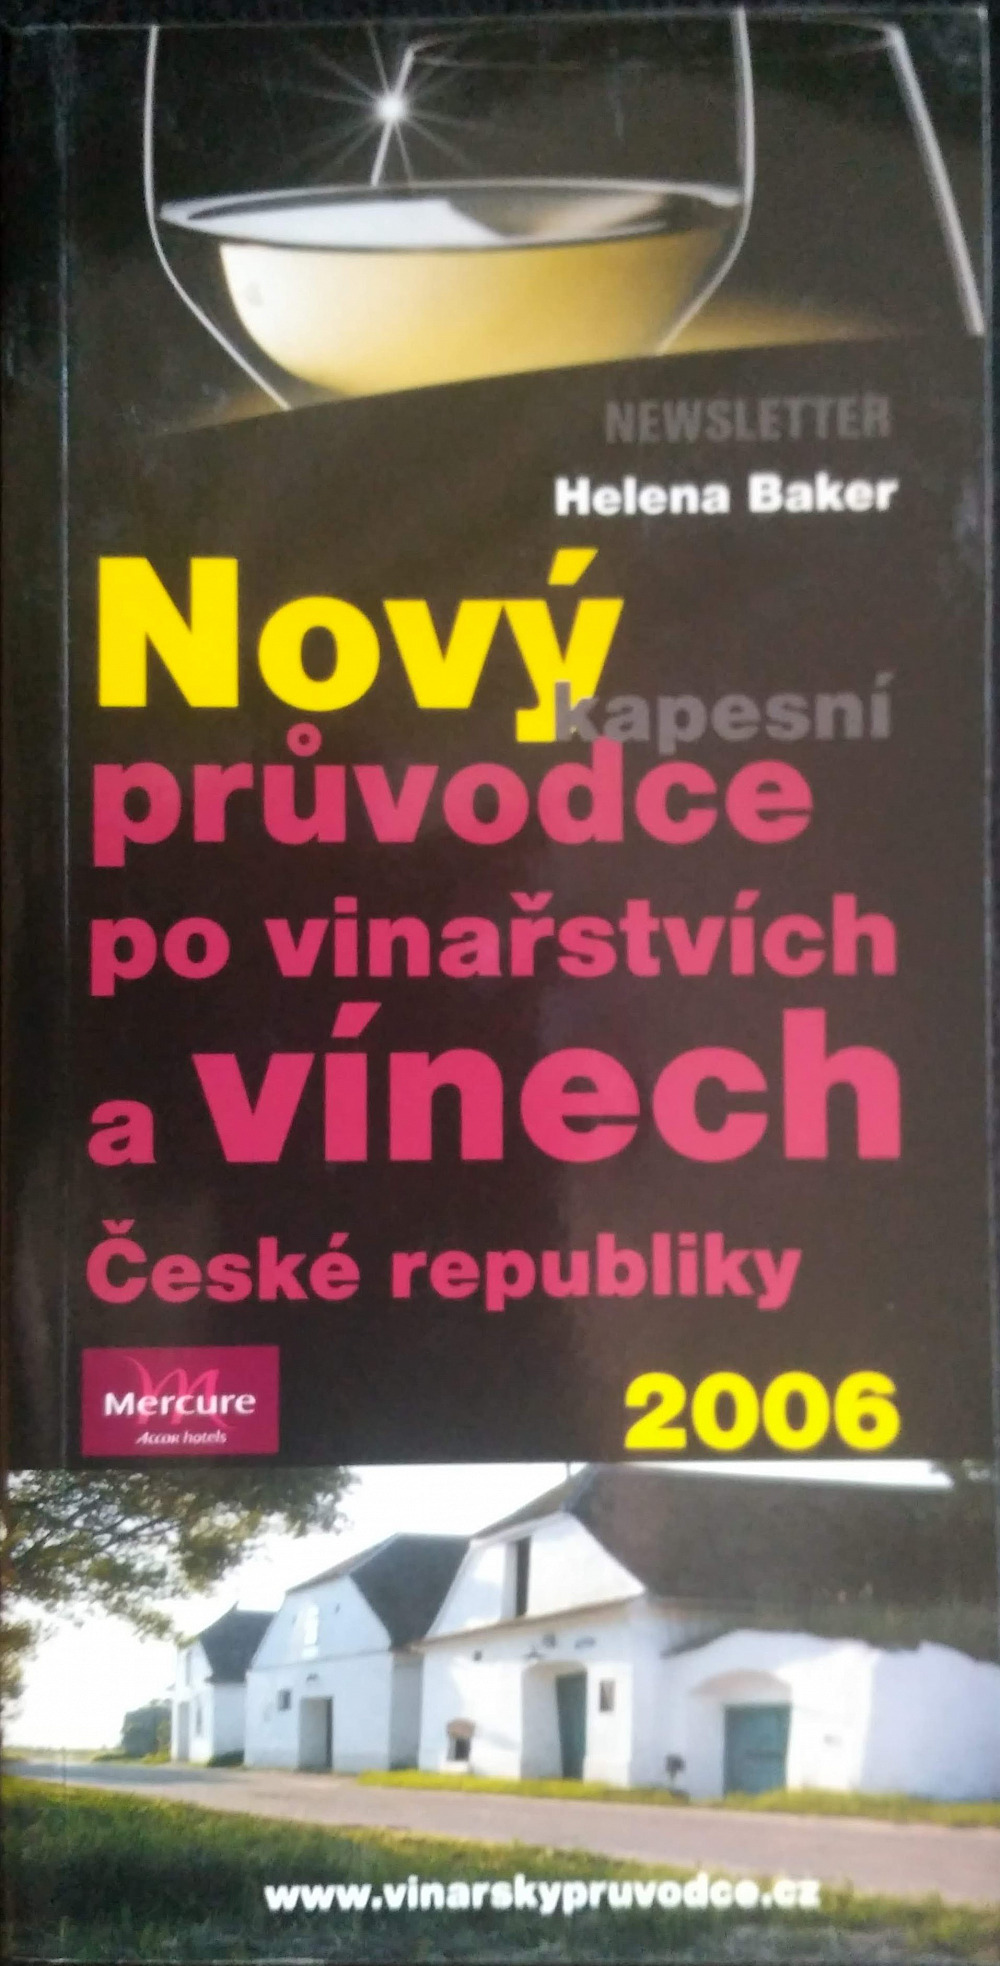 Nový kapesní průvodce po vinařstvích a vínech České republiky 2006